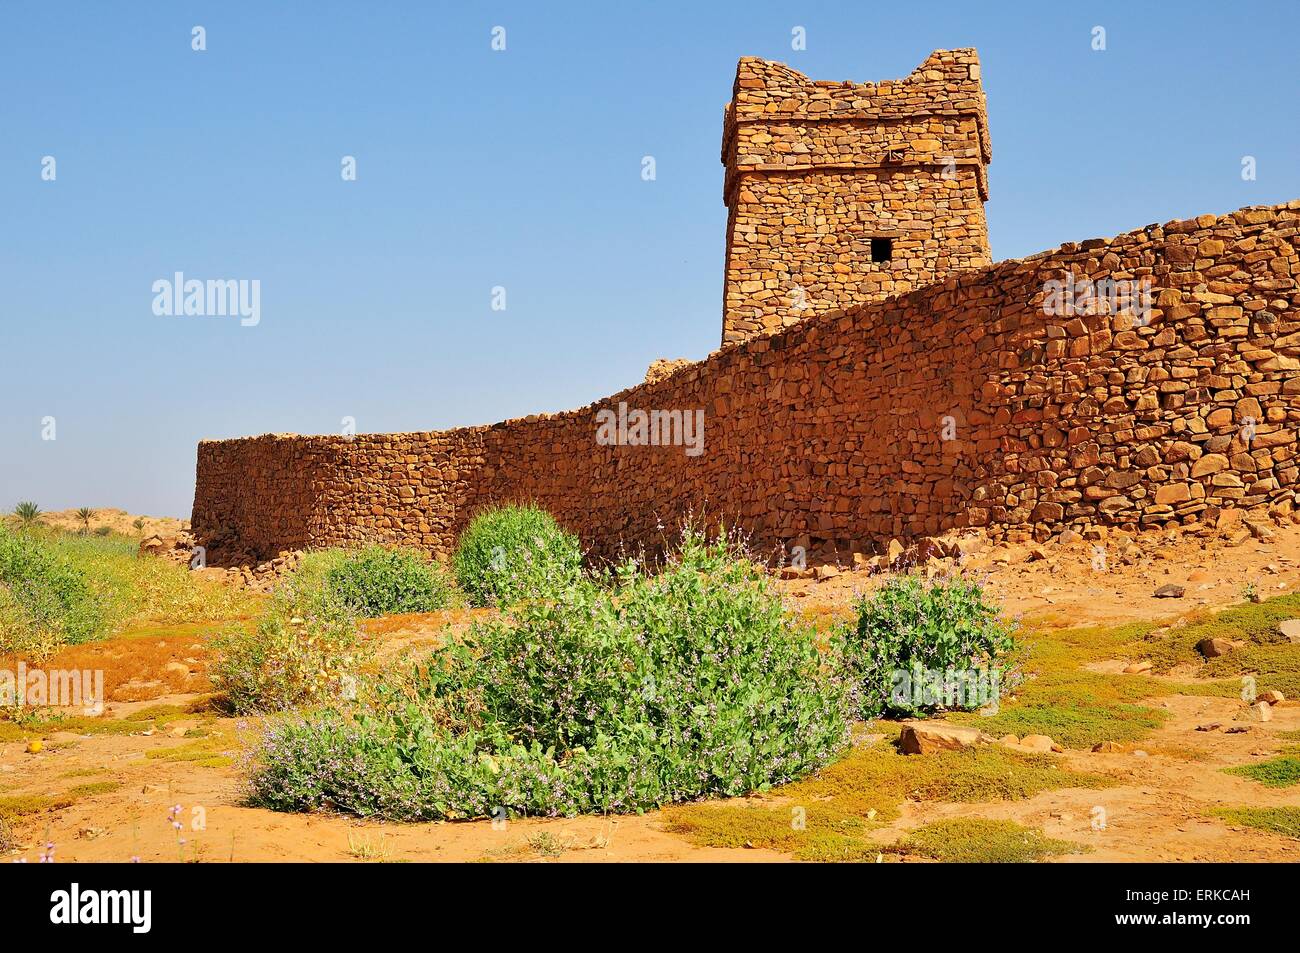 Remparts et minaret de la poste de traite fortifié ou Ksar, UNESCO World Heritage Site, Ouadane, région d'Adrar, Mauritanie Banque D'Images